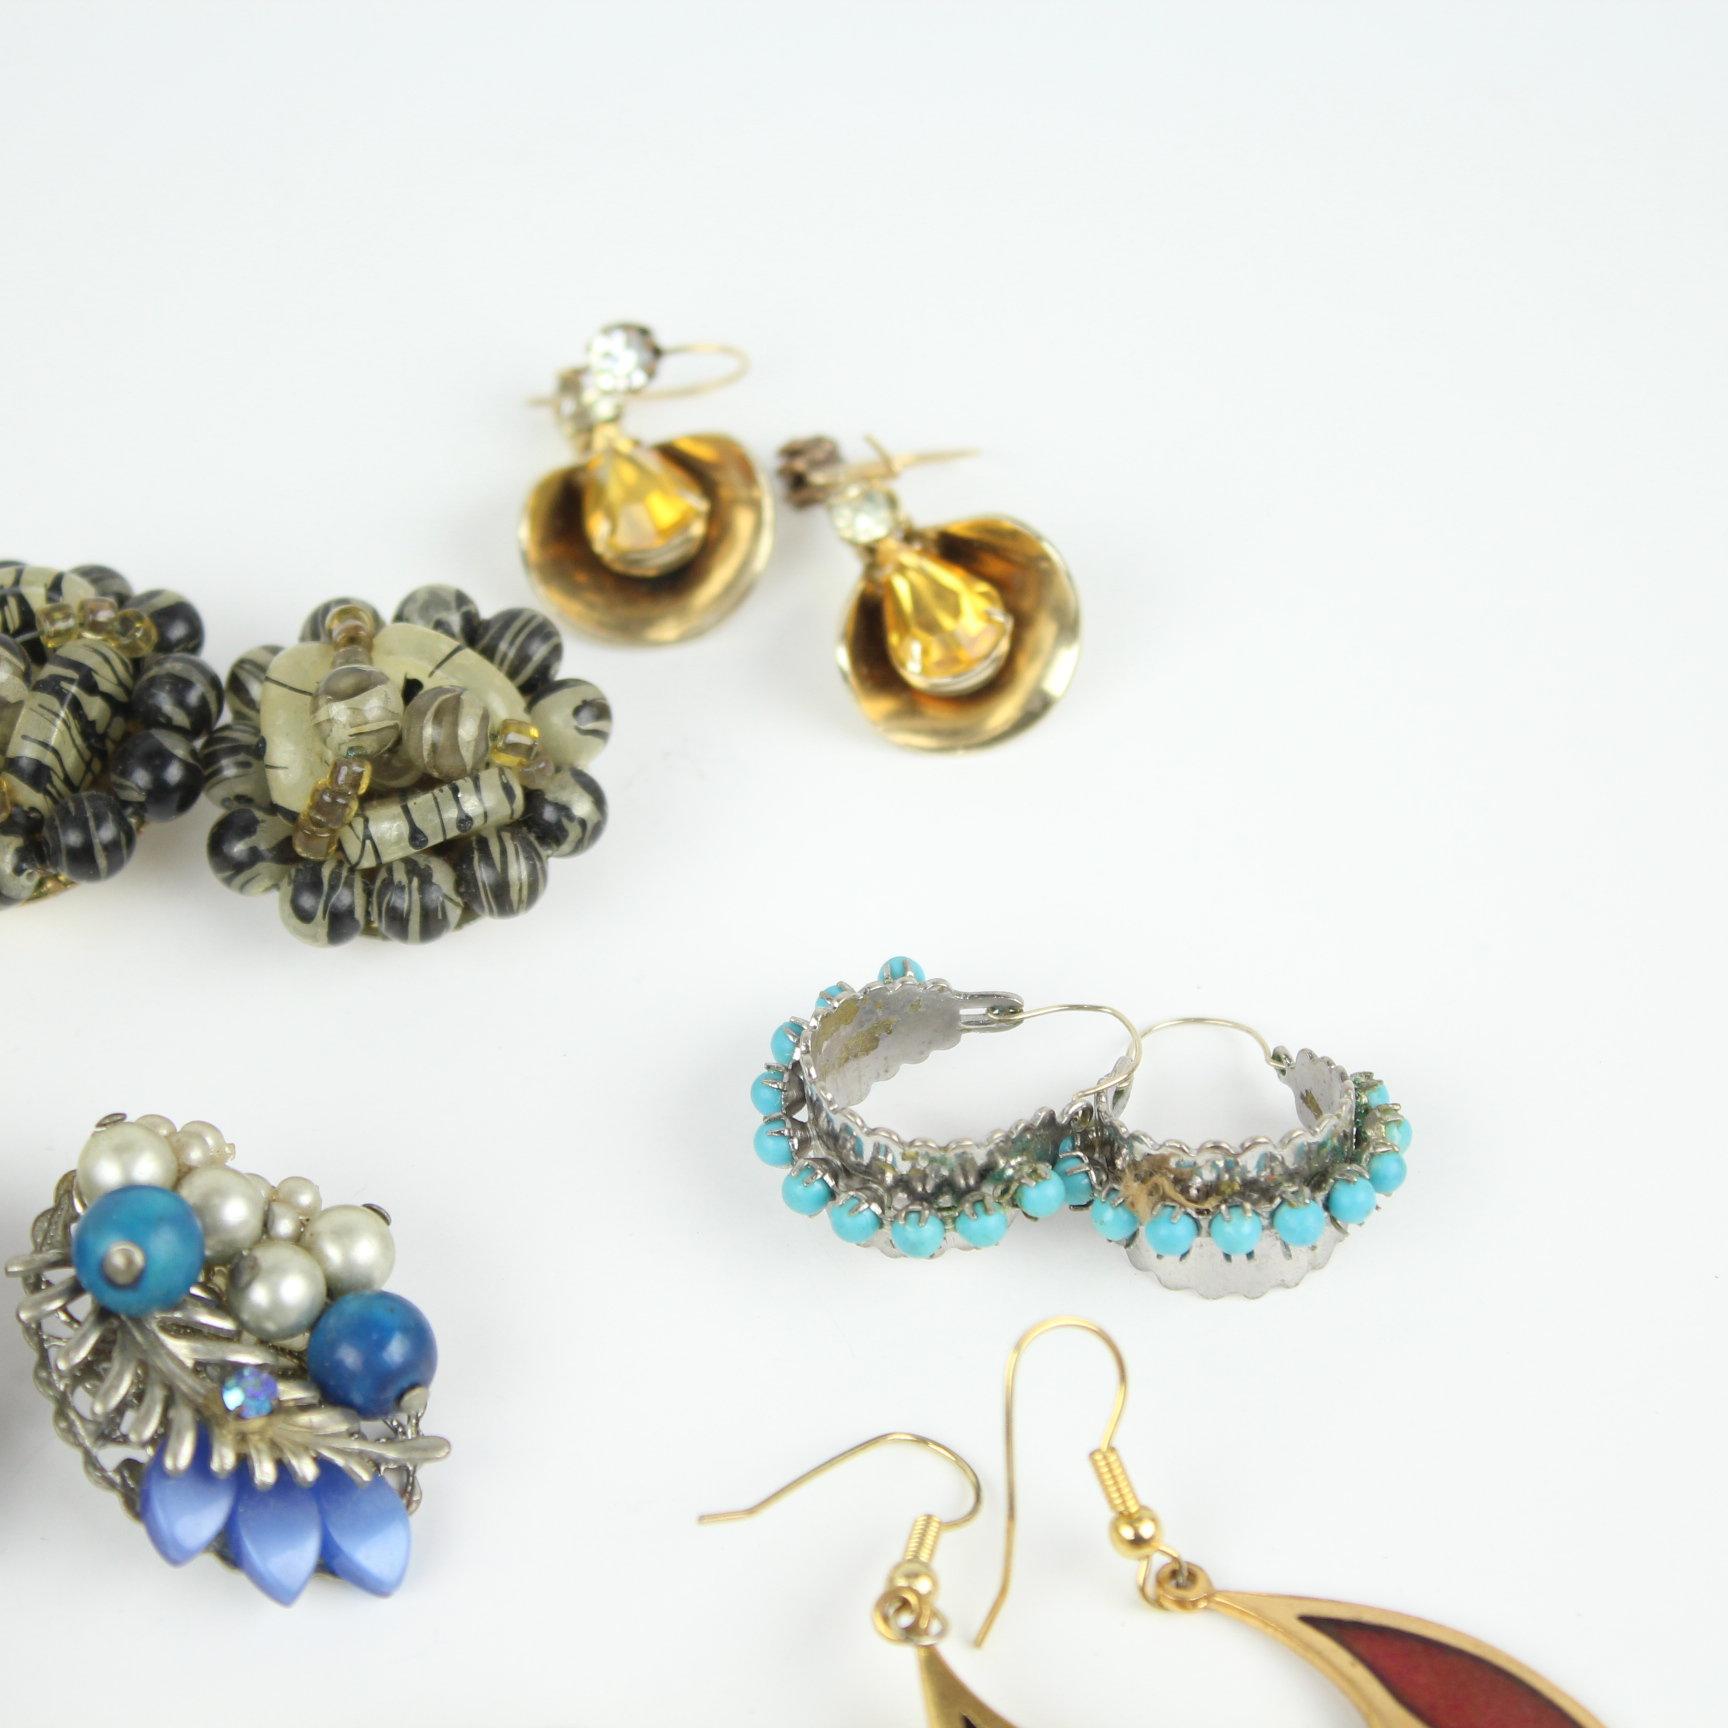 Vintage to Now 20 Pair of Ladies Costume Jewelry Earrings